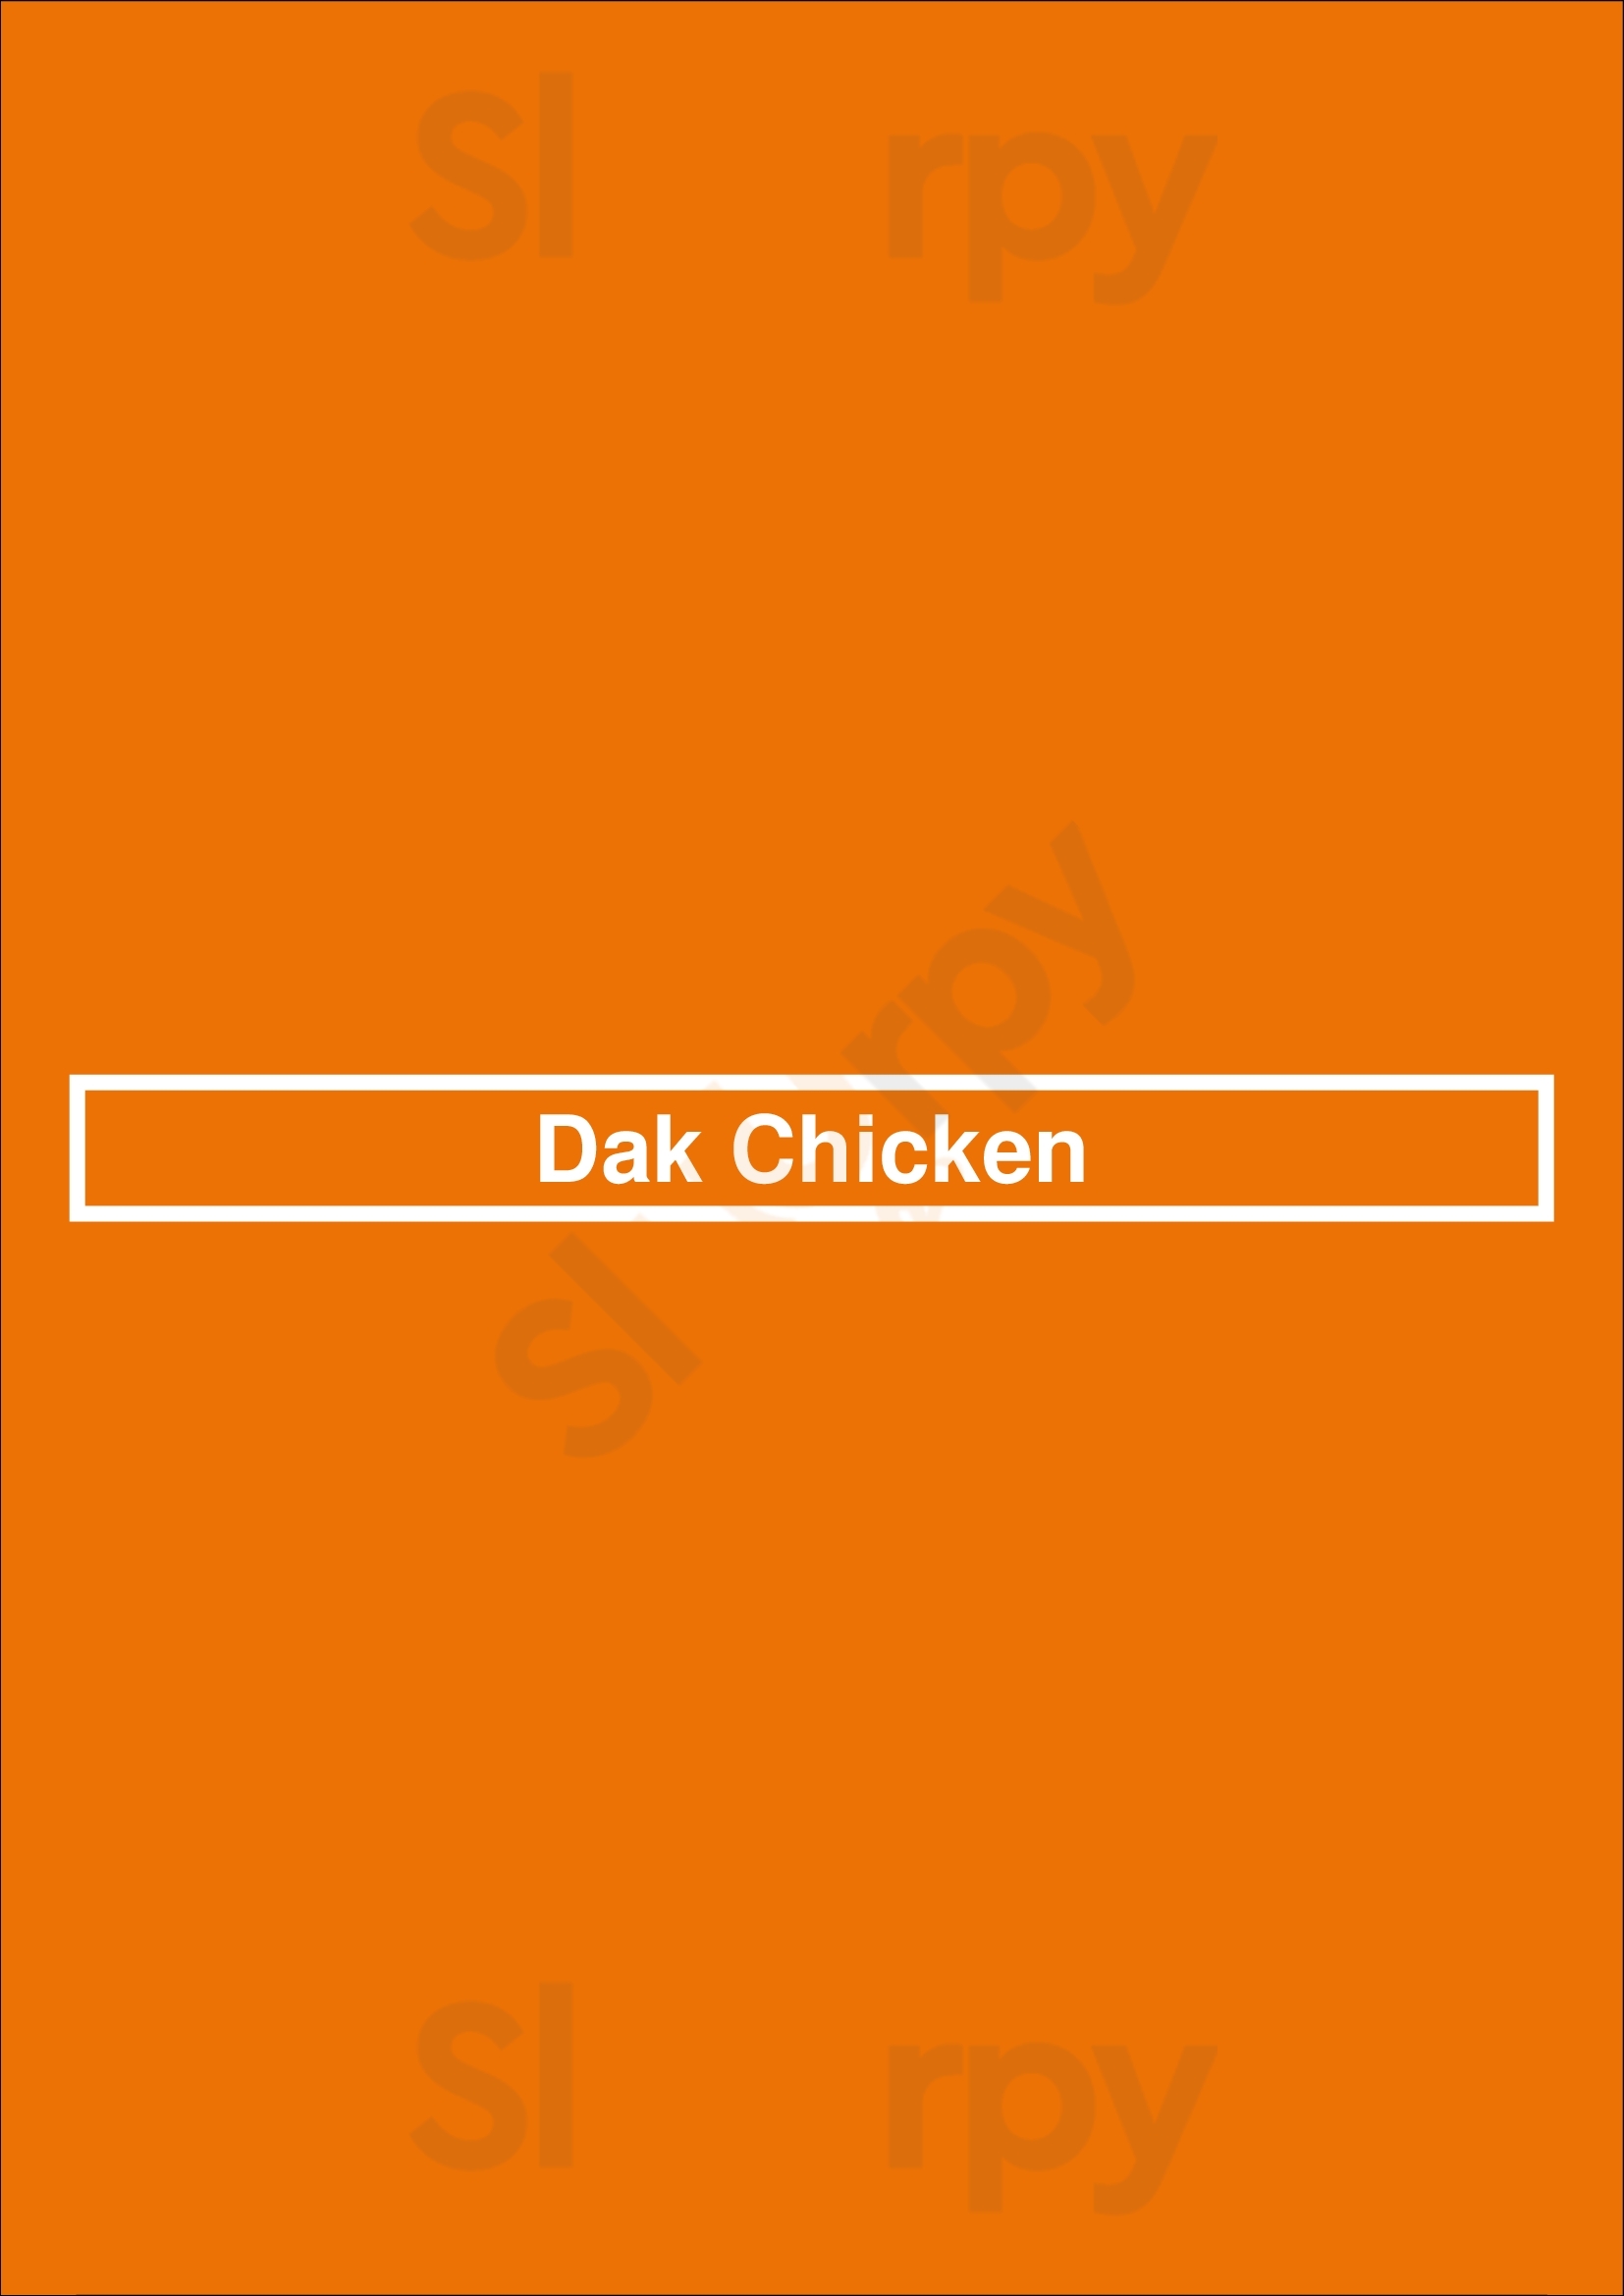 Dak Chicken Arlington Menu - 1